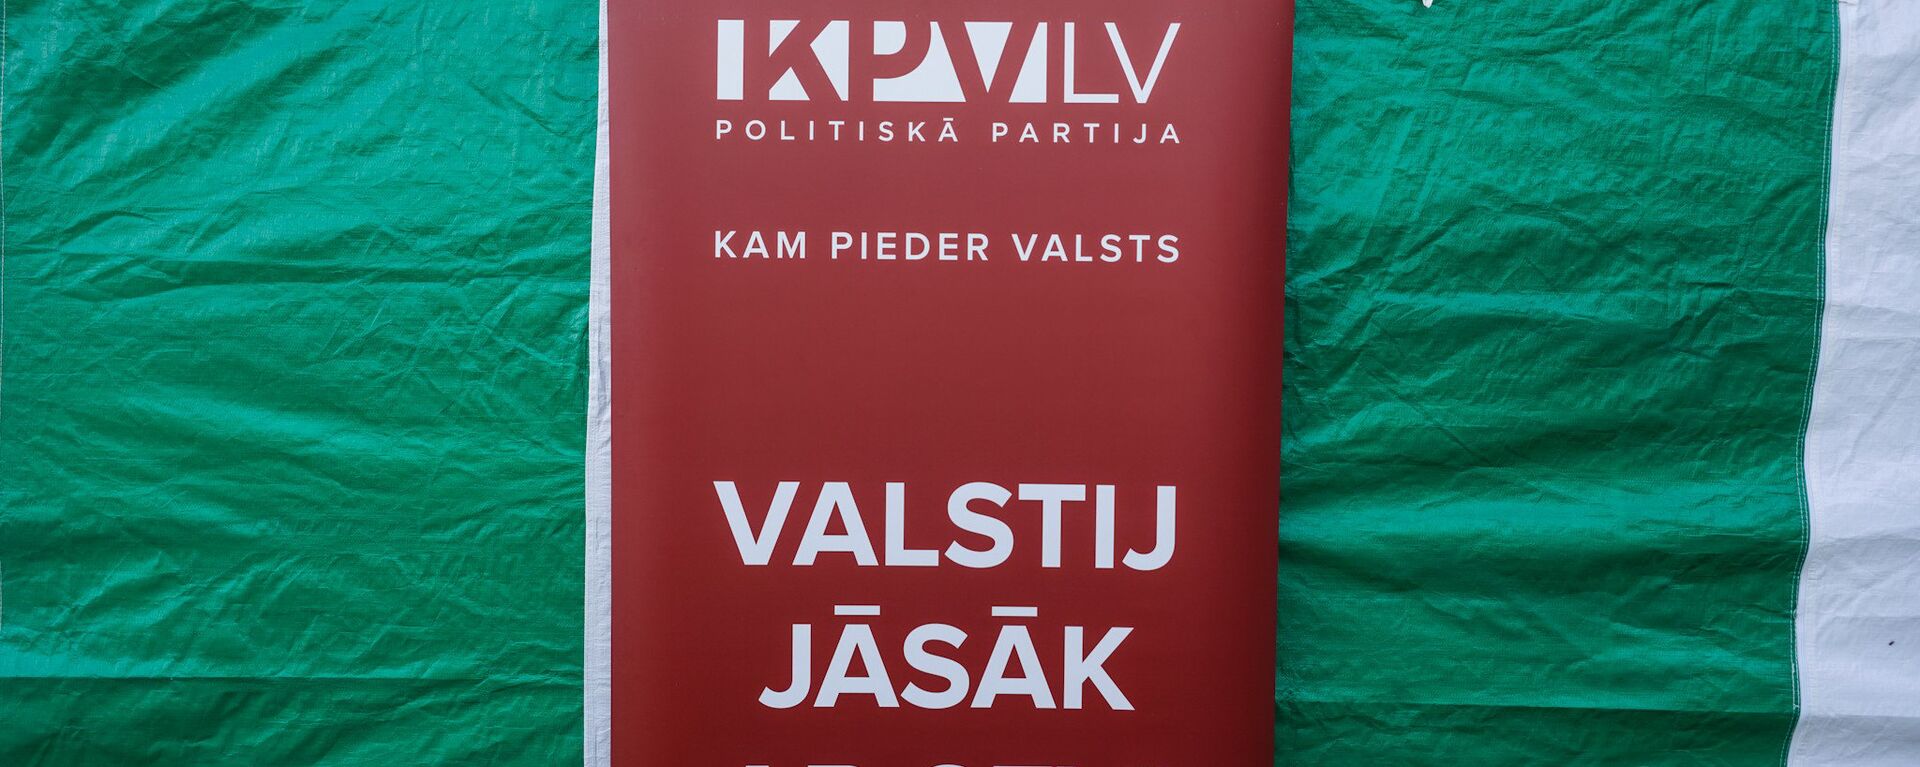 Политическая партия KPV LV - Sputnik Латвия, 1920, 14.08.2021